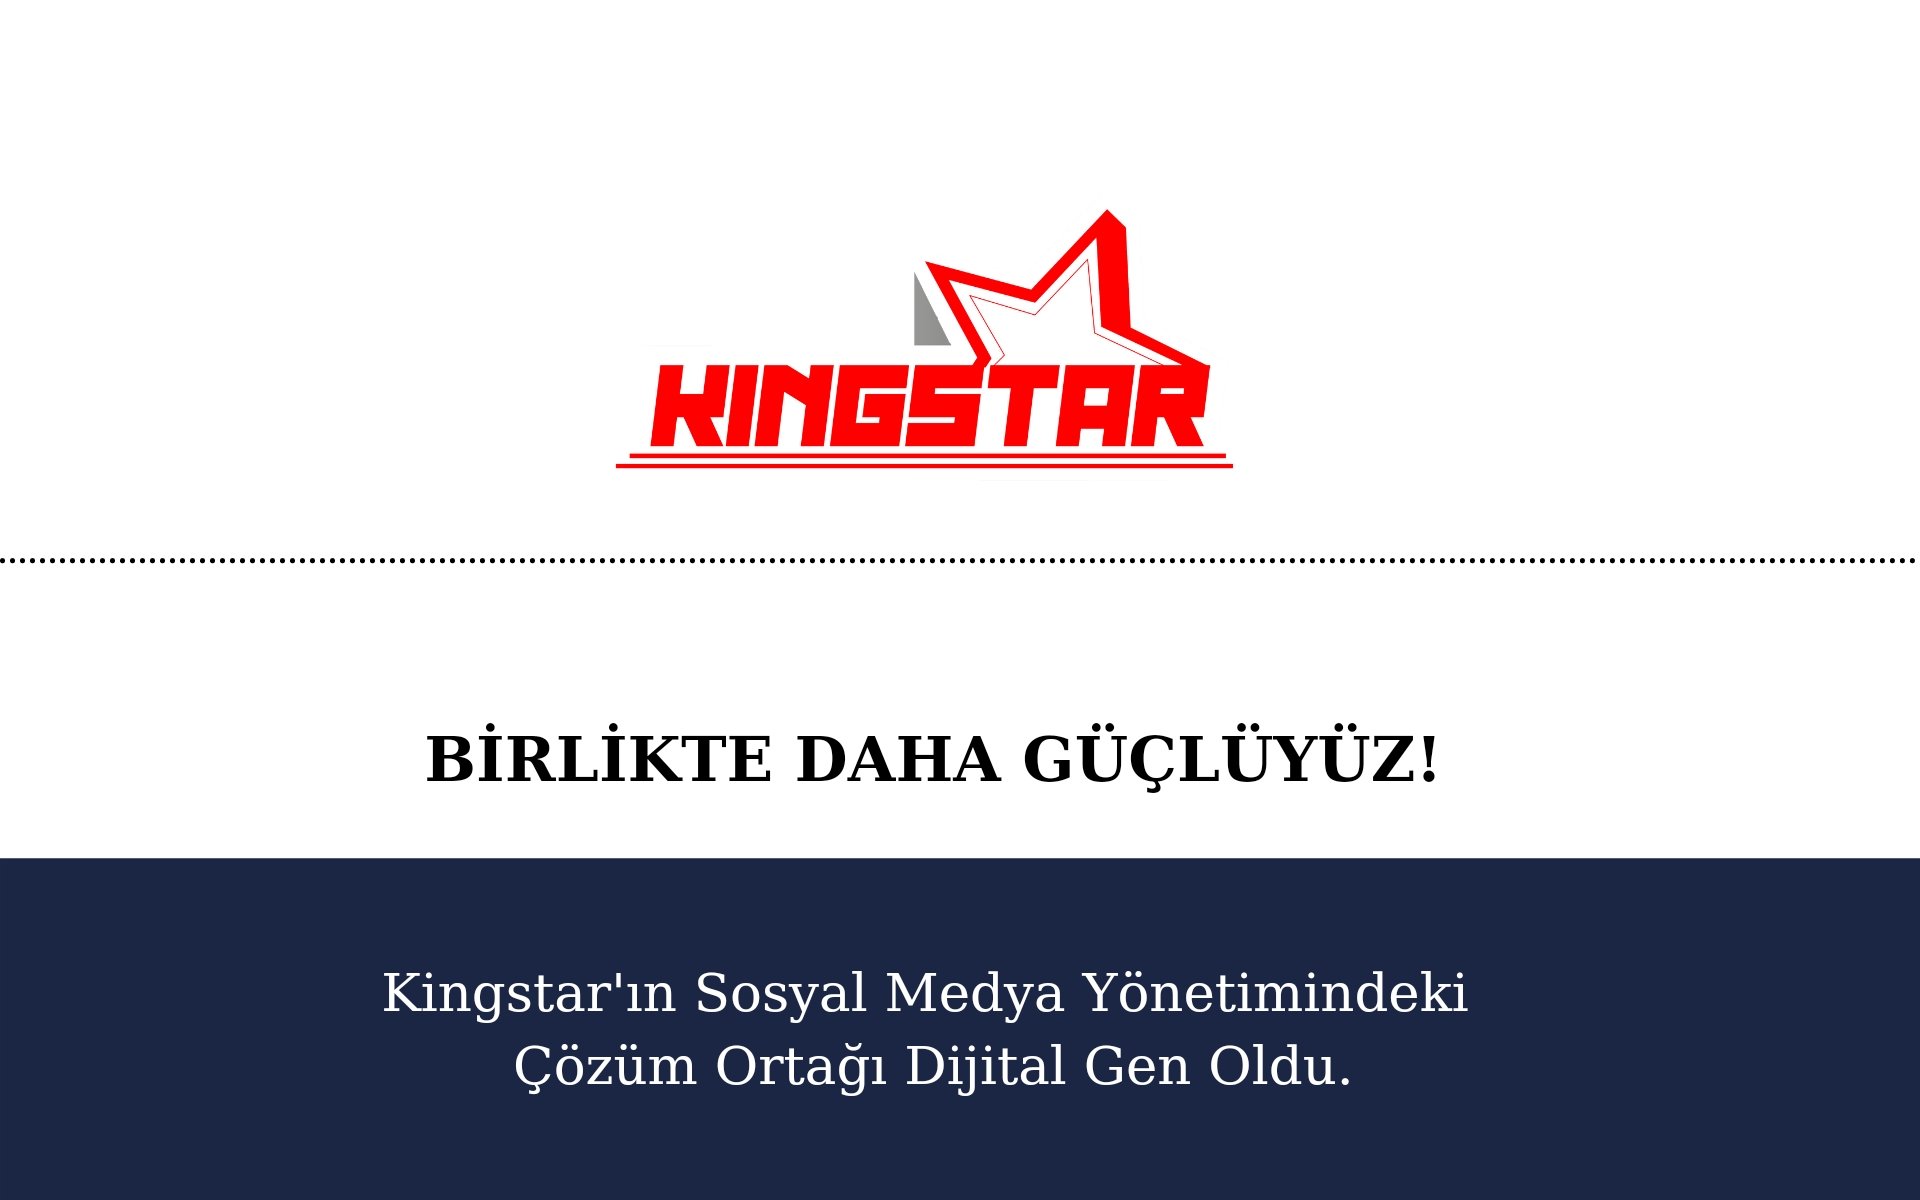 Kingstar’nın Sosyal Medya Yönetimindeki Çözüm Ortağı Dijital Gen Oldu.